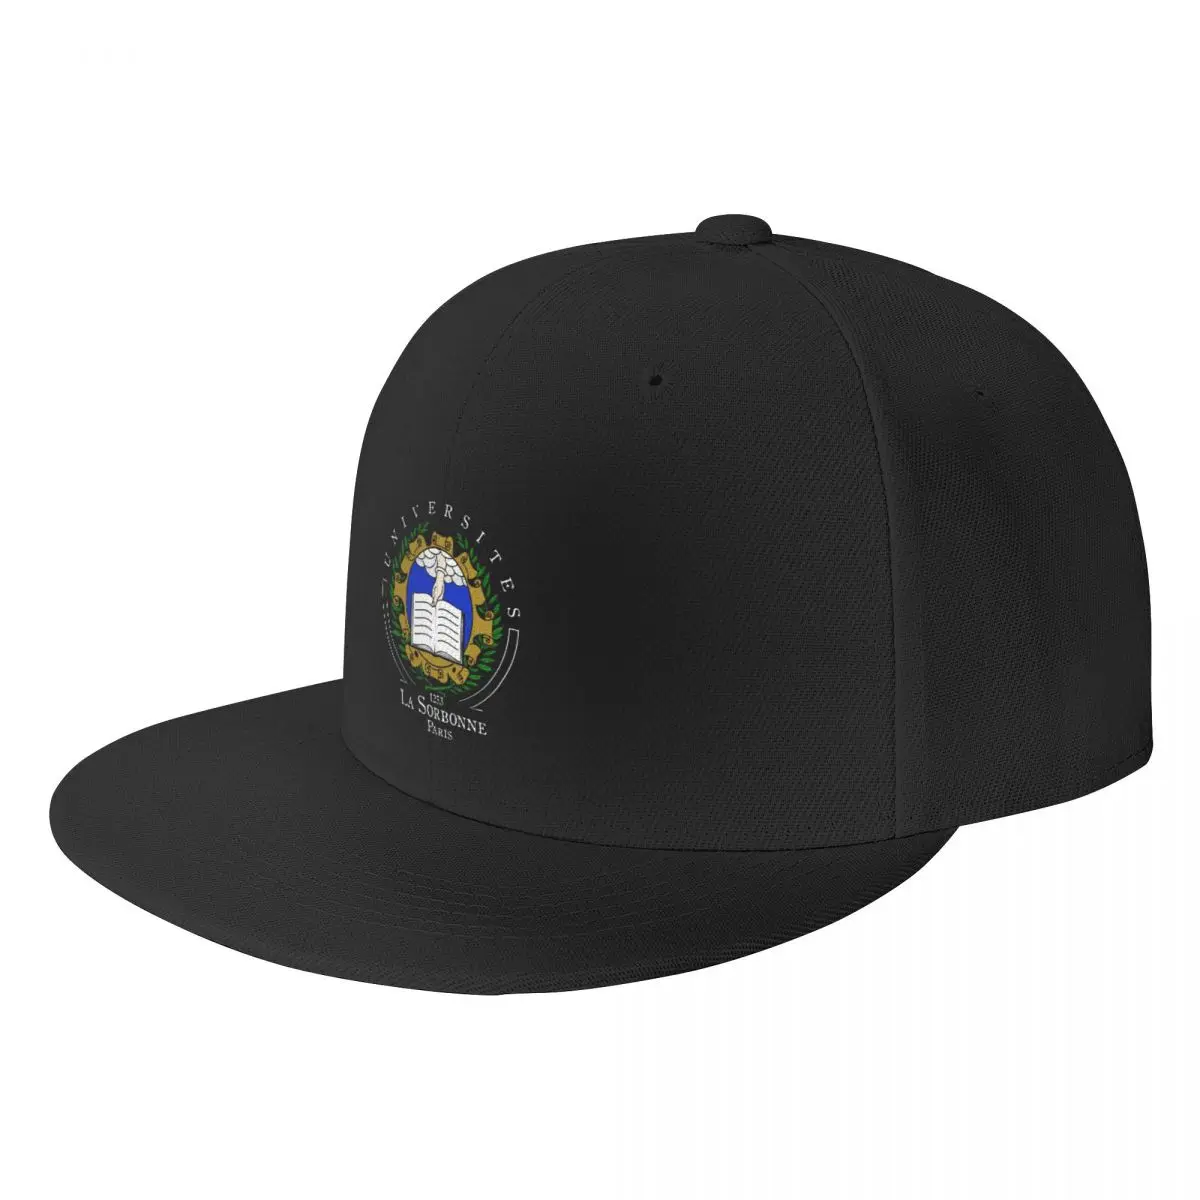 

Universite Paris La Sorbonne Baseball Cap Hat Luxury Brand |-F-| Military Tactical Cap Sun Hats For Women Men's